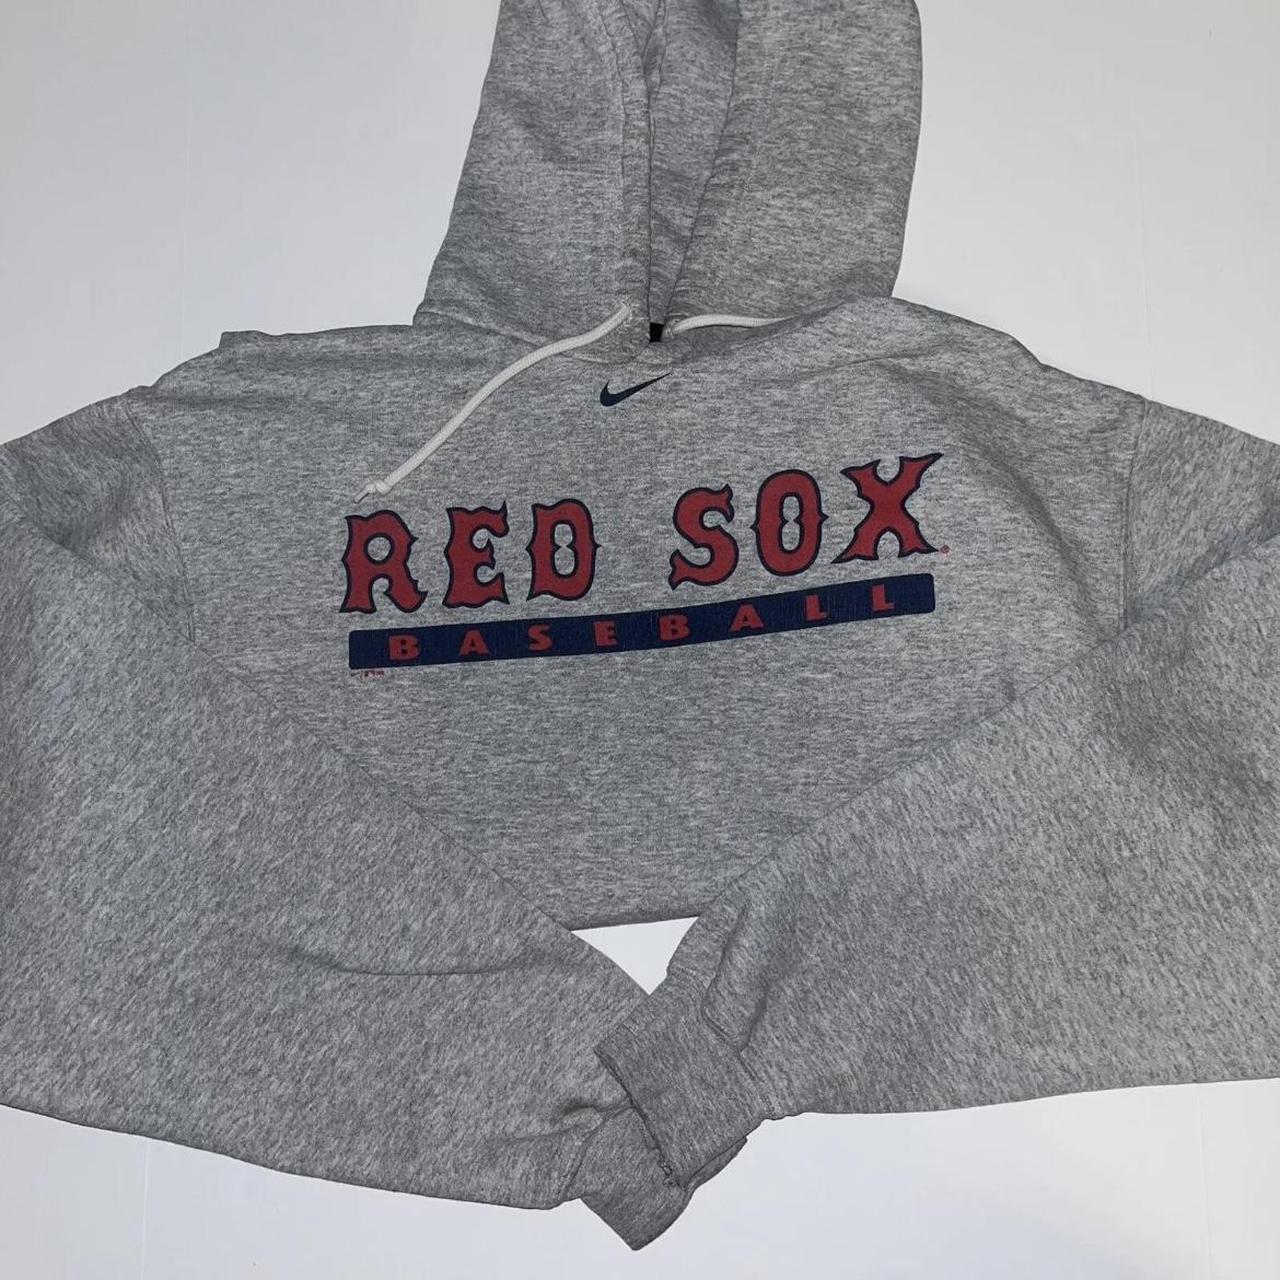 vtg y2k NIKE TEAM Boston Red Sox embroidered center - Depop